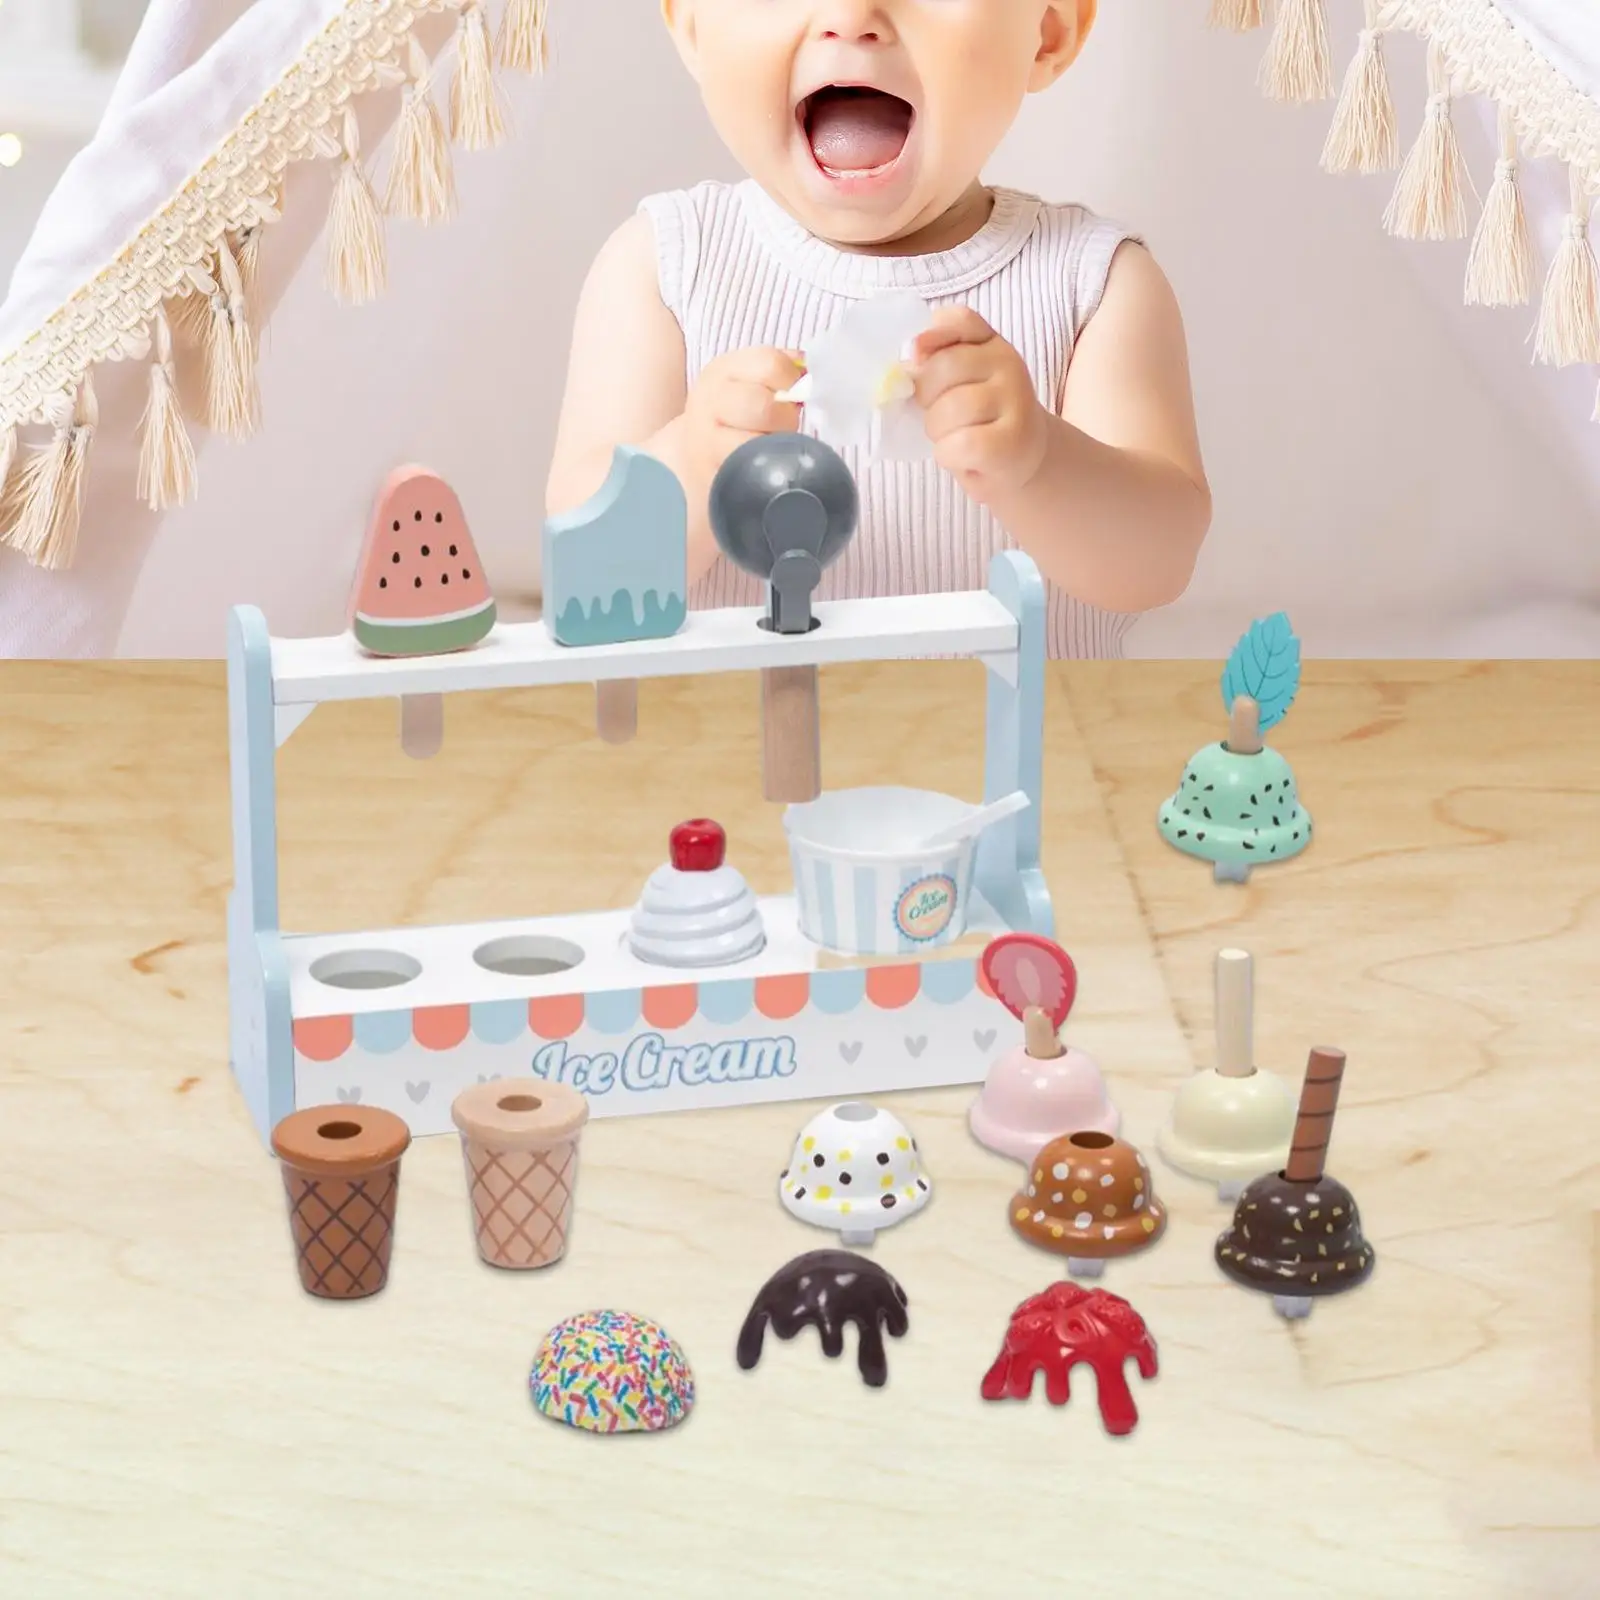 

Игрушка для мороженого с деревянной подставкой, обучающая игрушка, деревянная игрушка, имитация мороженого для детей дошкольного возраста, подарки для детей